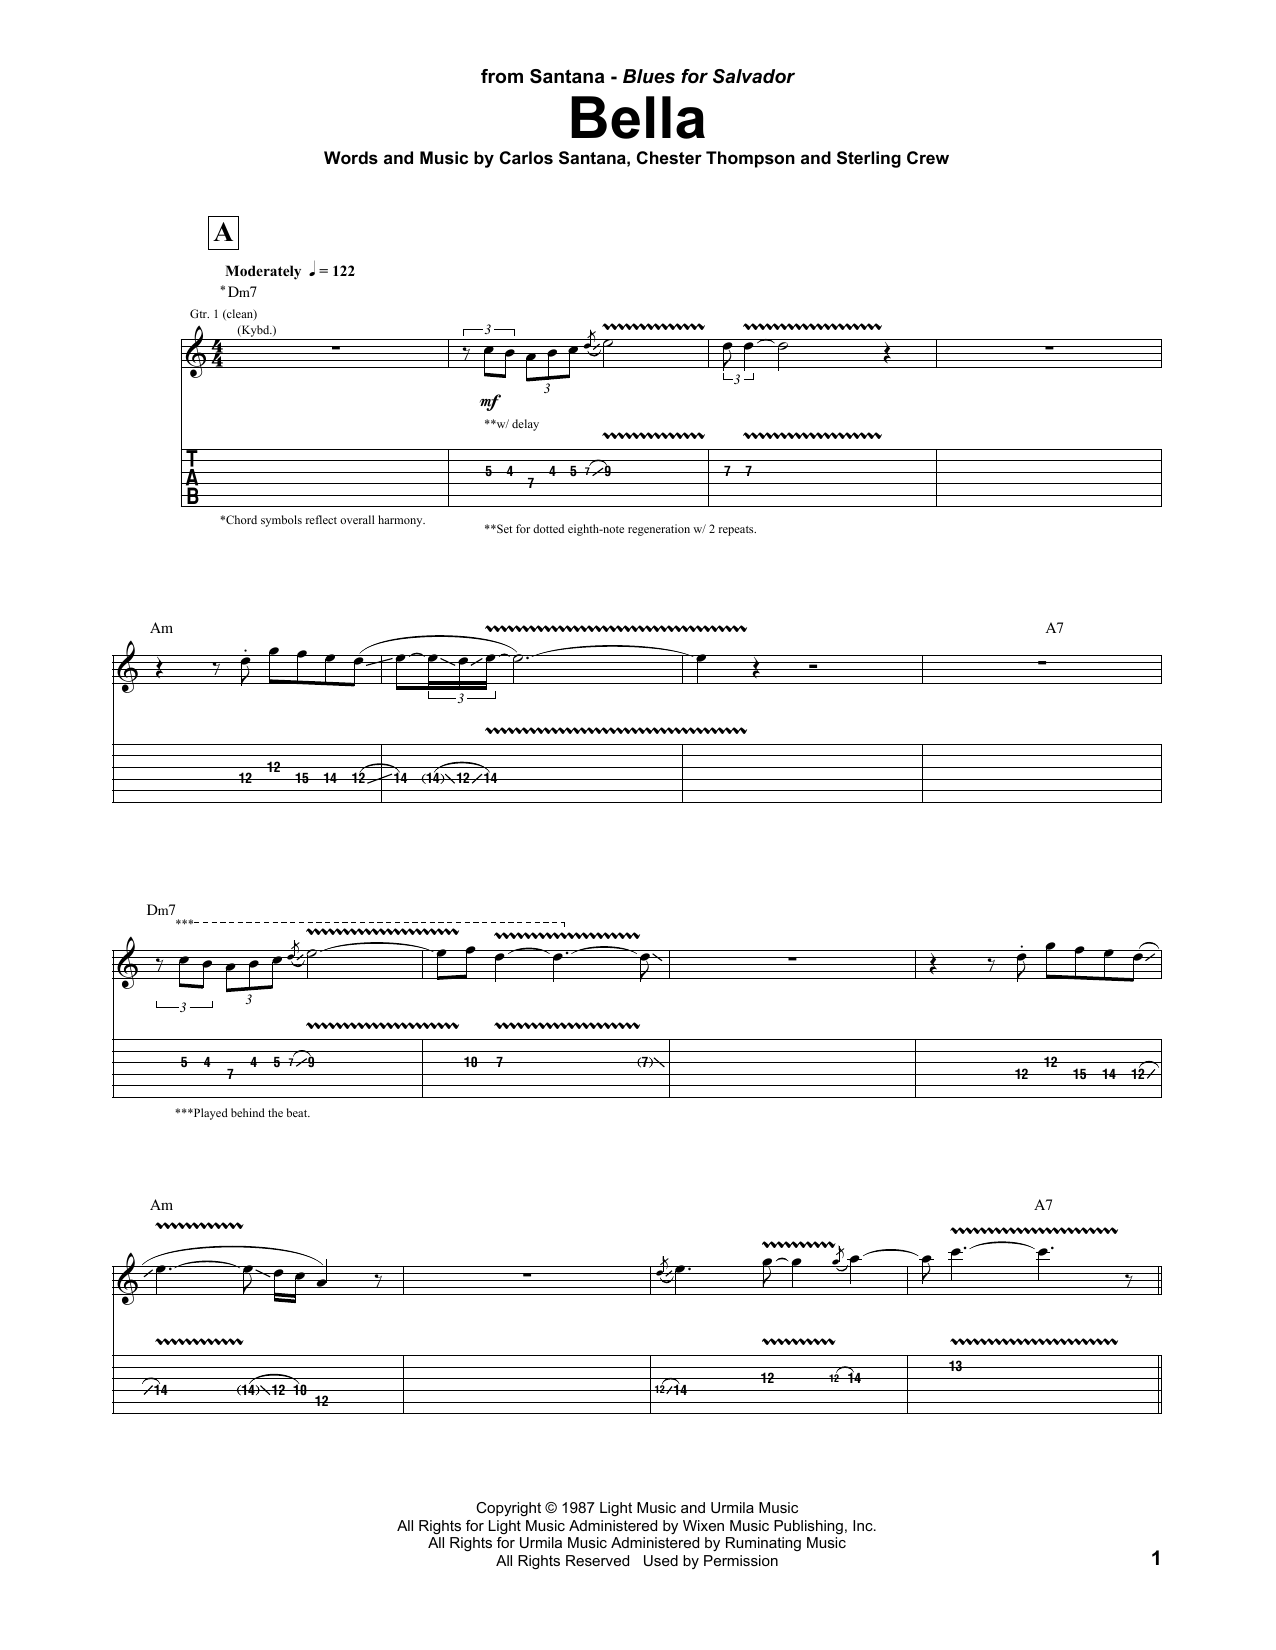 Carlos Santana Bella sheet music notes and chords arranged for Guitar Tab